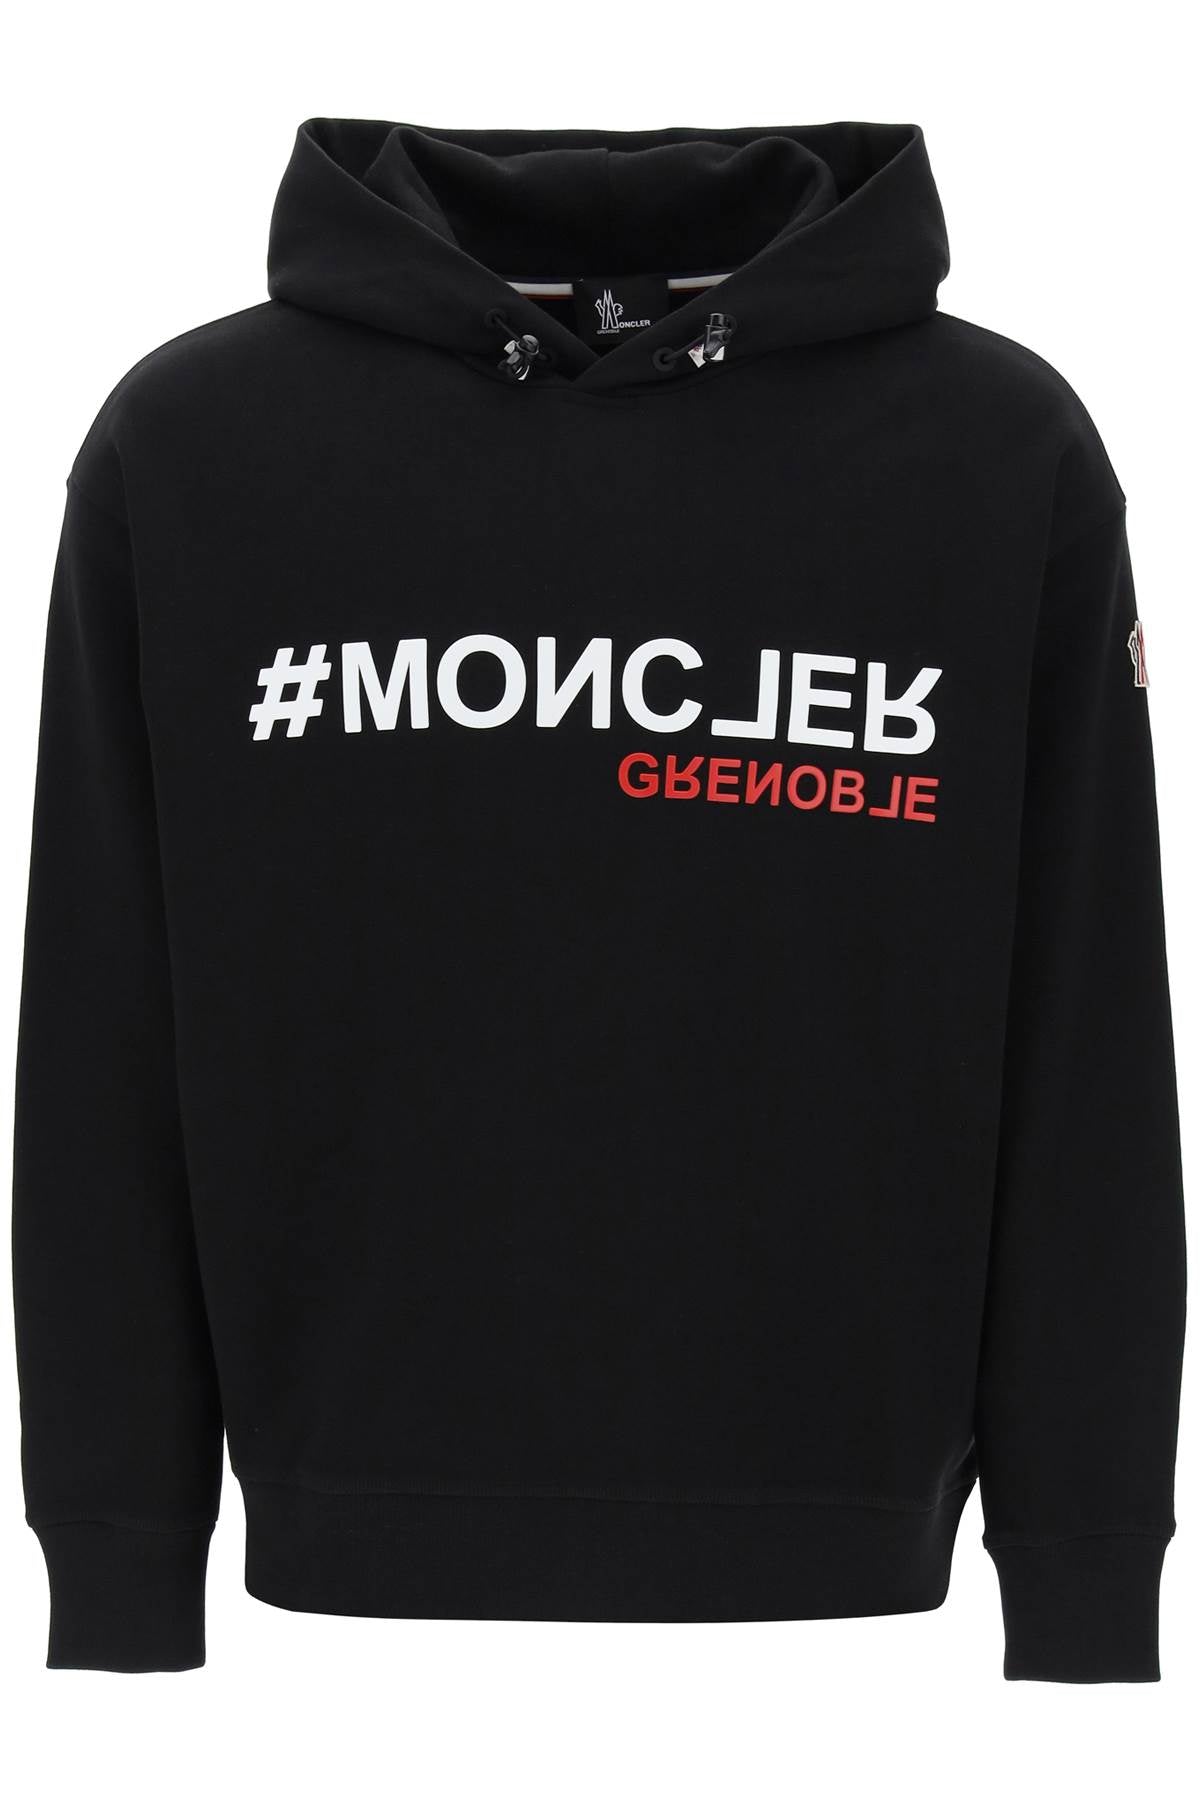 Moncler Grenoble hooded sweatshirt with 8G000108098U999